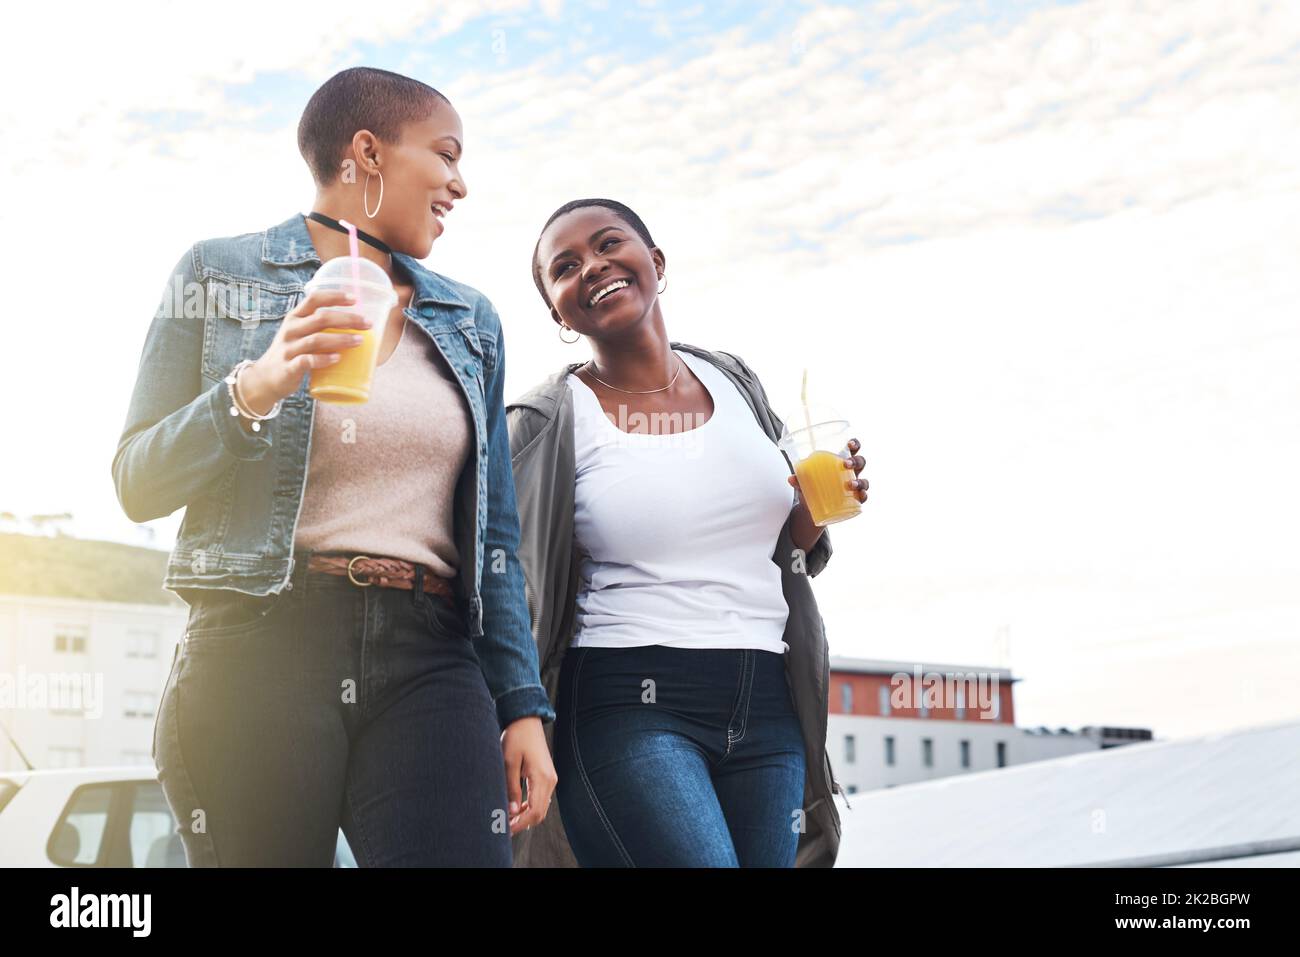 Gemeinsam mit Ihnen durch jeden Lebensabschnitt. Aufnahme zweier junger Frauen, die in der Stadt lachen und dabei ihre kühlen Getränke halten. Stockfoto